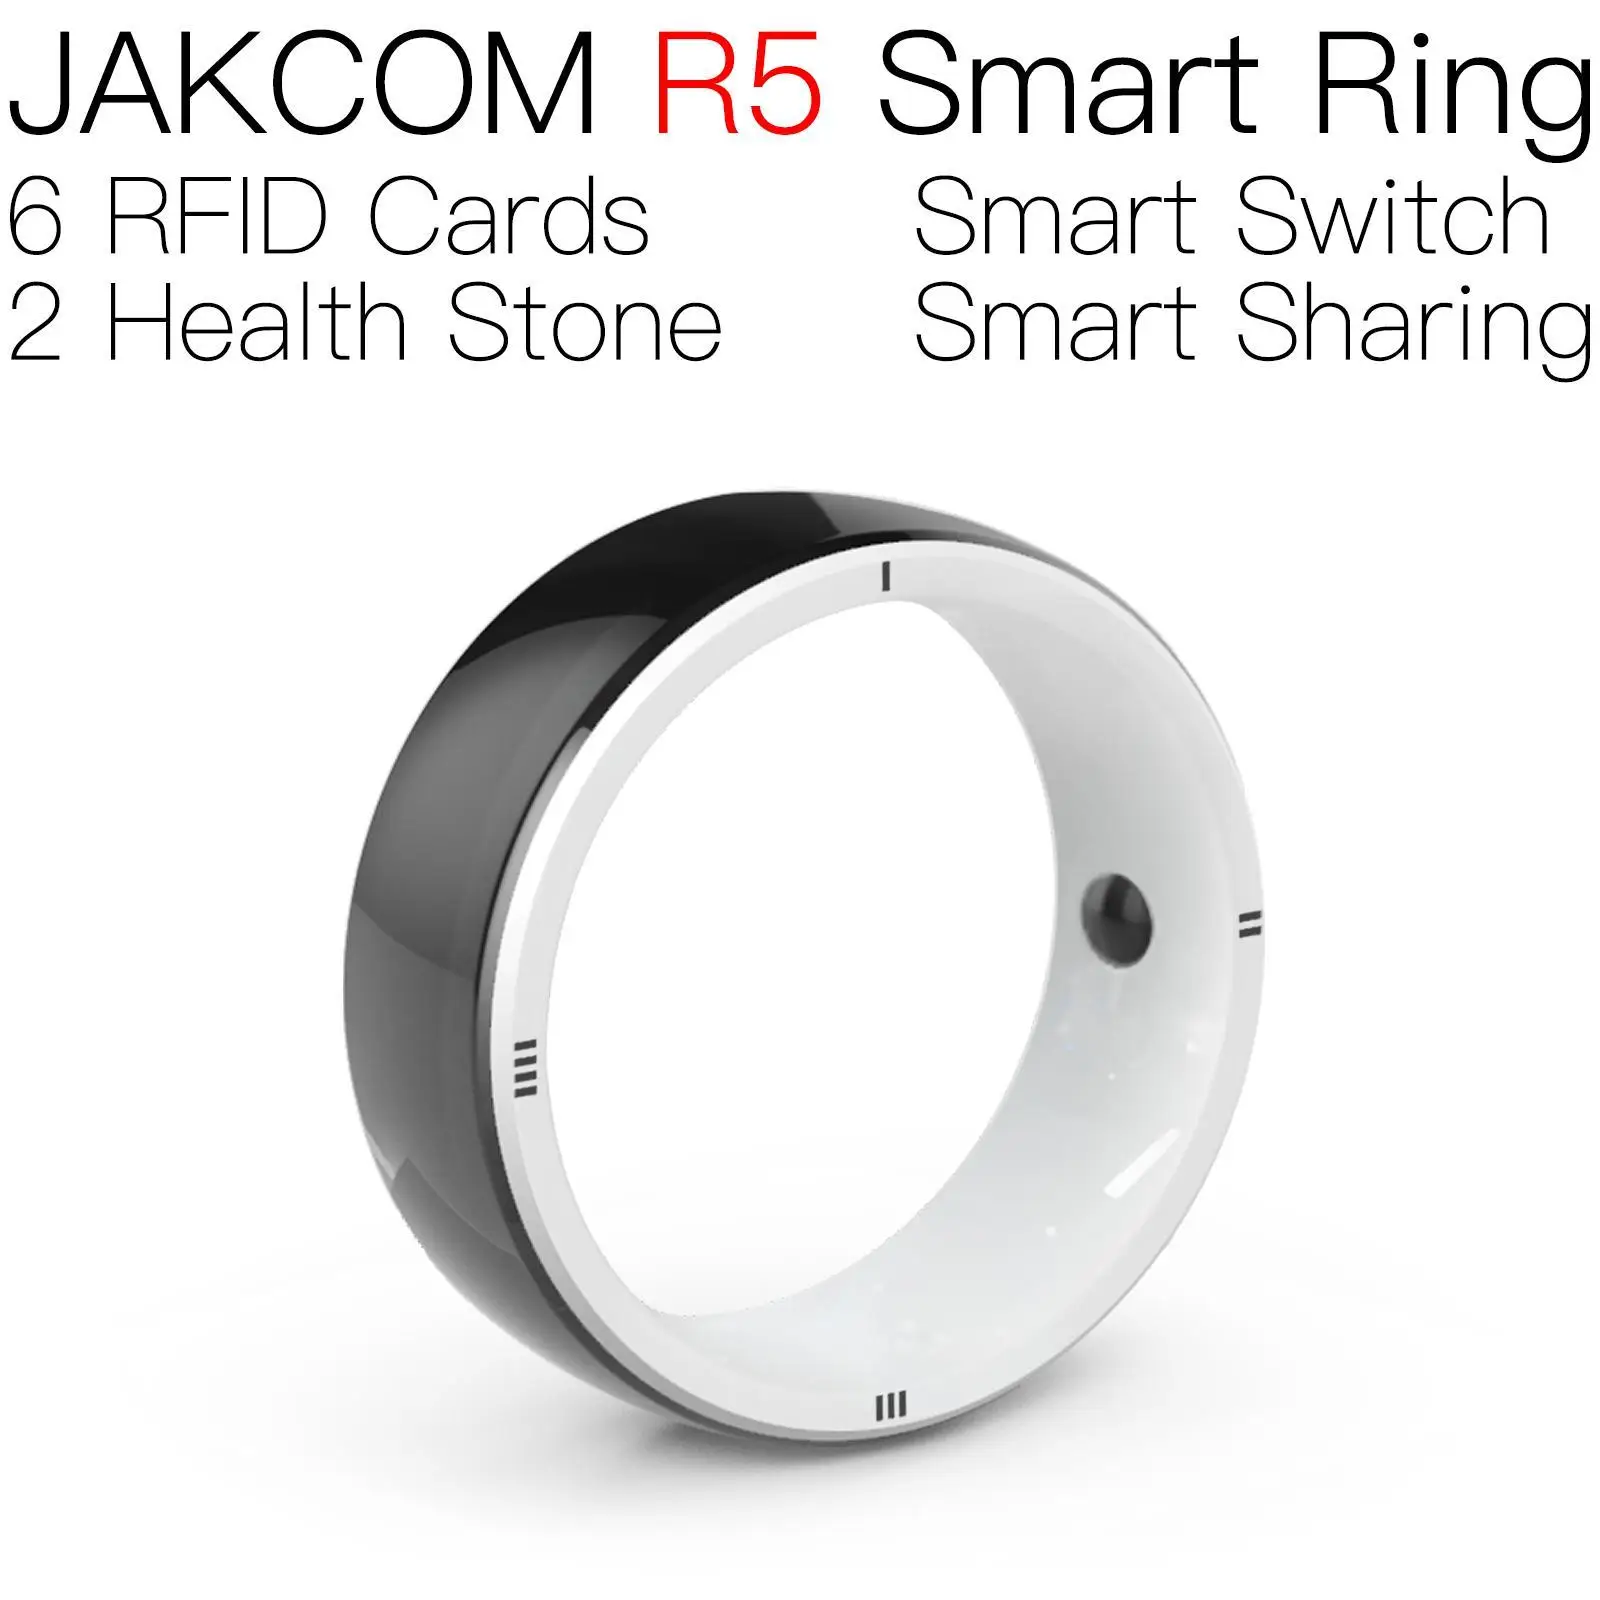 

Умное кольцо JAKCOM R5, новее, чем карта rfid 375 кГц, клейкая петля uid для смартфона в течение 1 года, бирка iso 15693, металлический рычаг